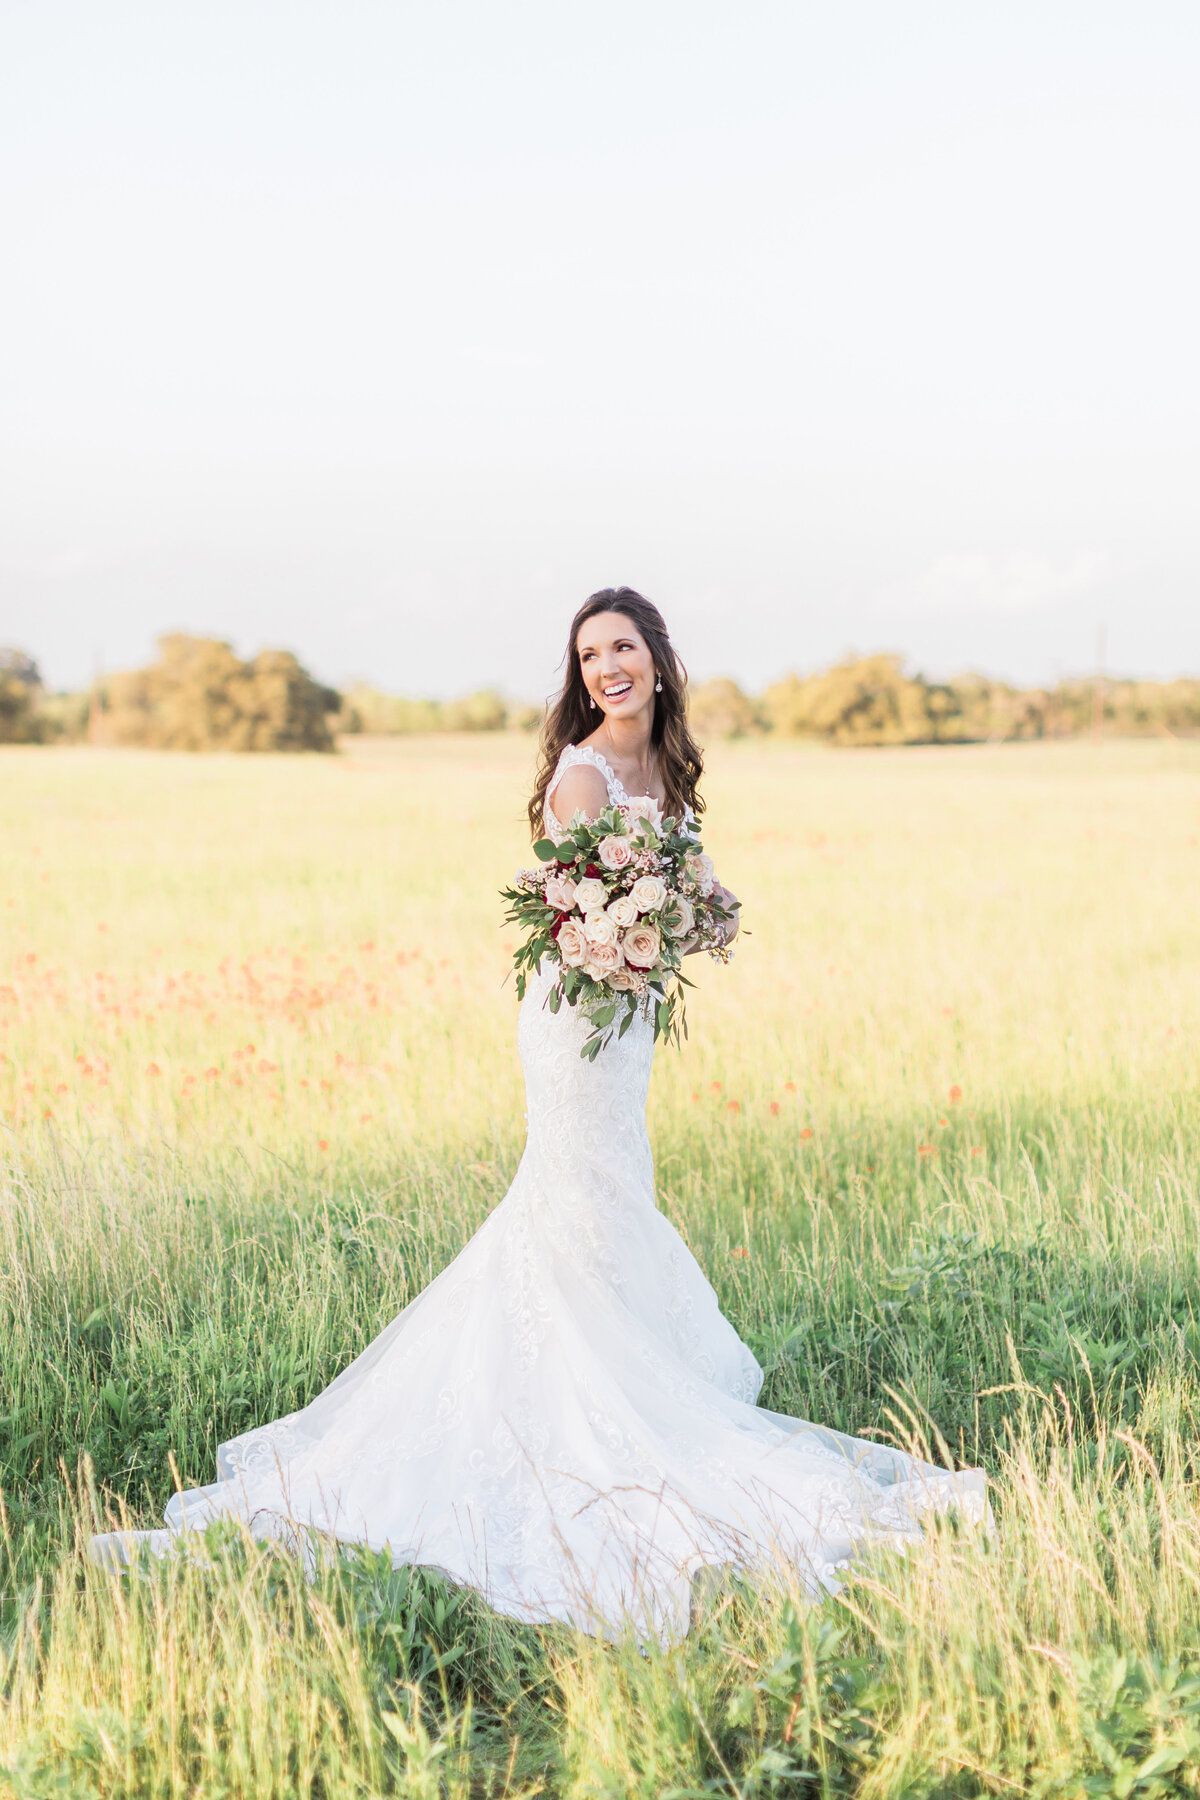 An outdoor bride in Houston, Texas